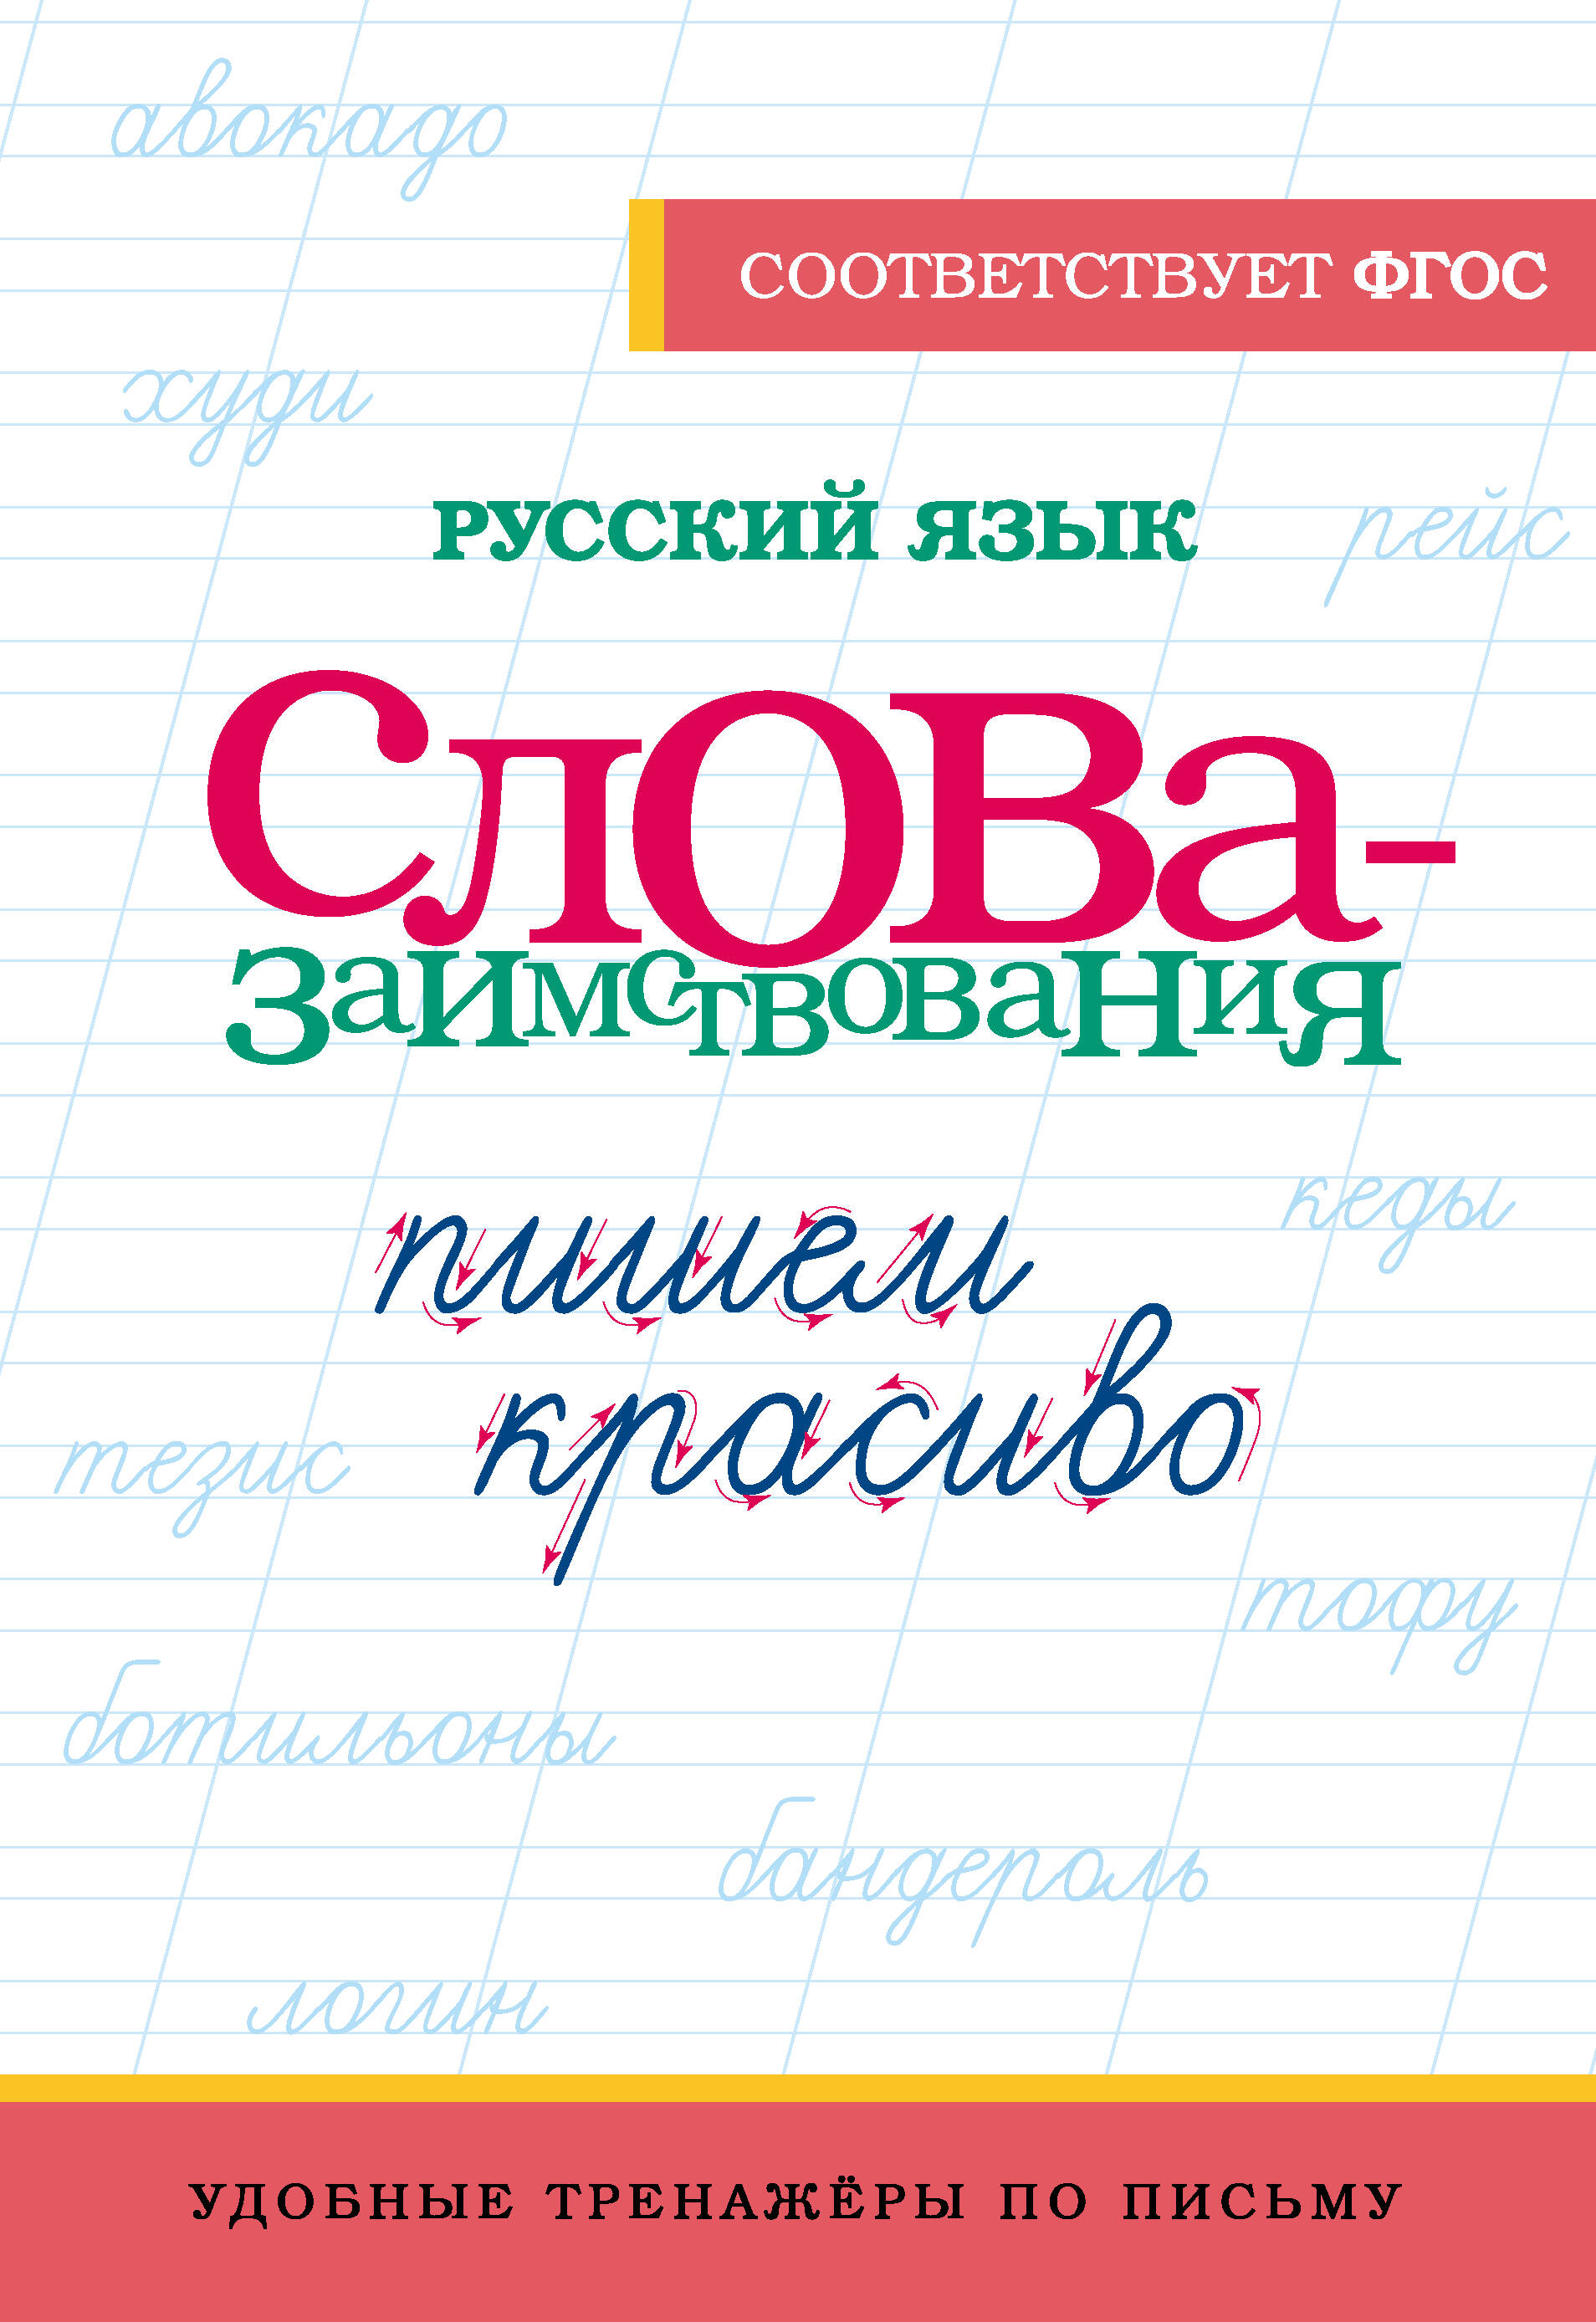  Русский язык. Пишем красиво слова-заимствования - страница 0